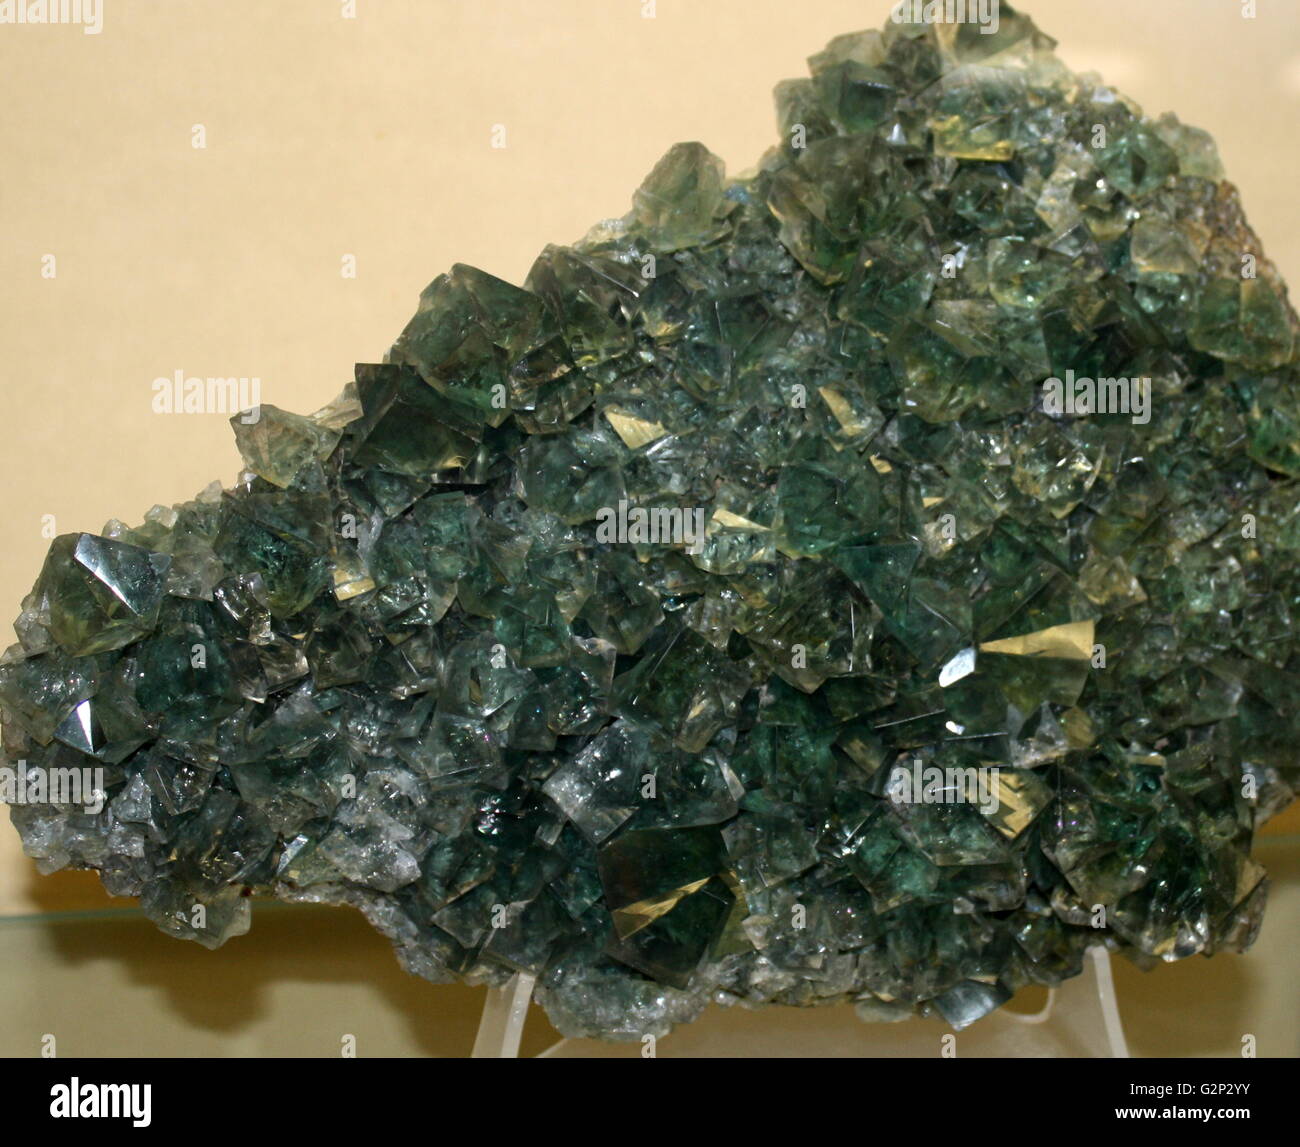 Fluorit, eine isometrische halide Mineral aus Kalzium flouride. Dieses Beispiel zeigt eine Städtepartnerschaft fluoreszierende Würfel. Stockfoto